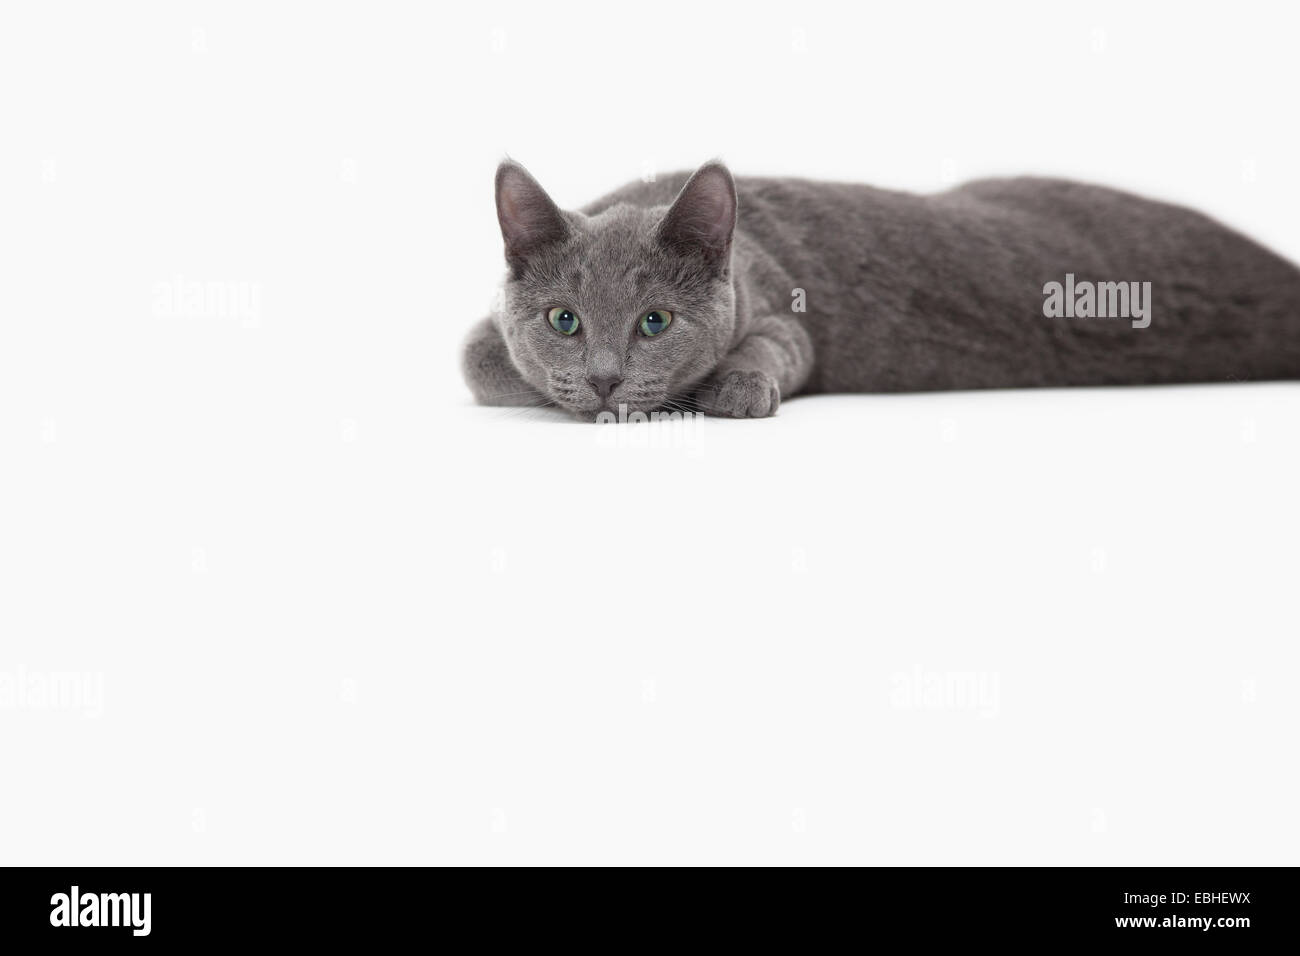 Russian Blue cat relaxing Stock Photo